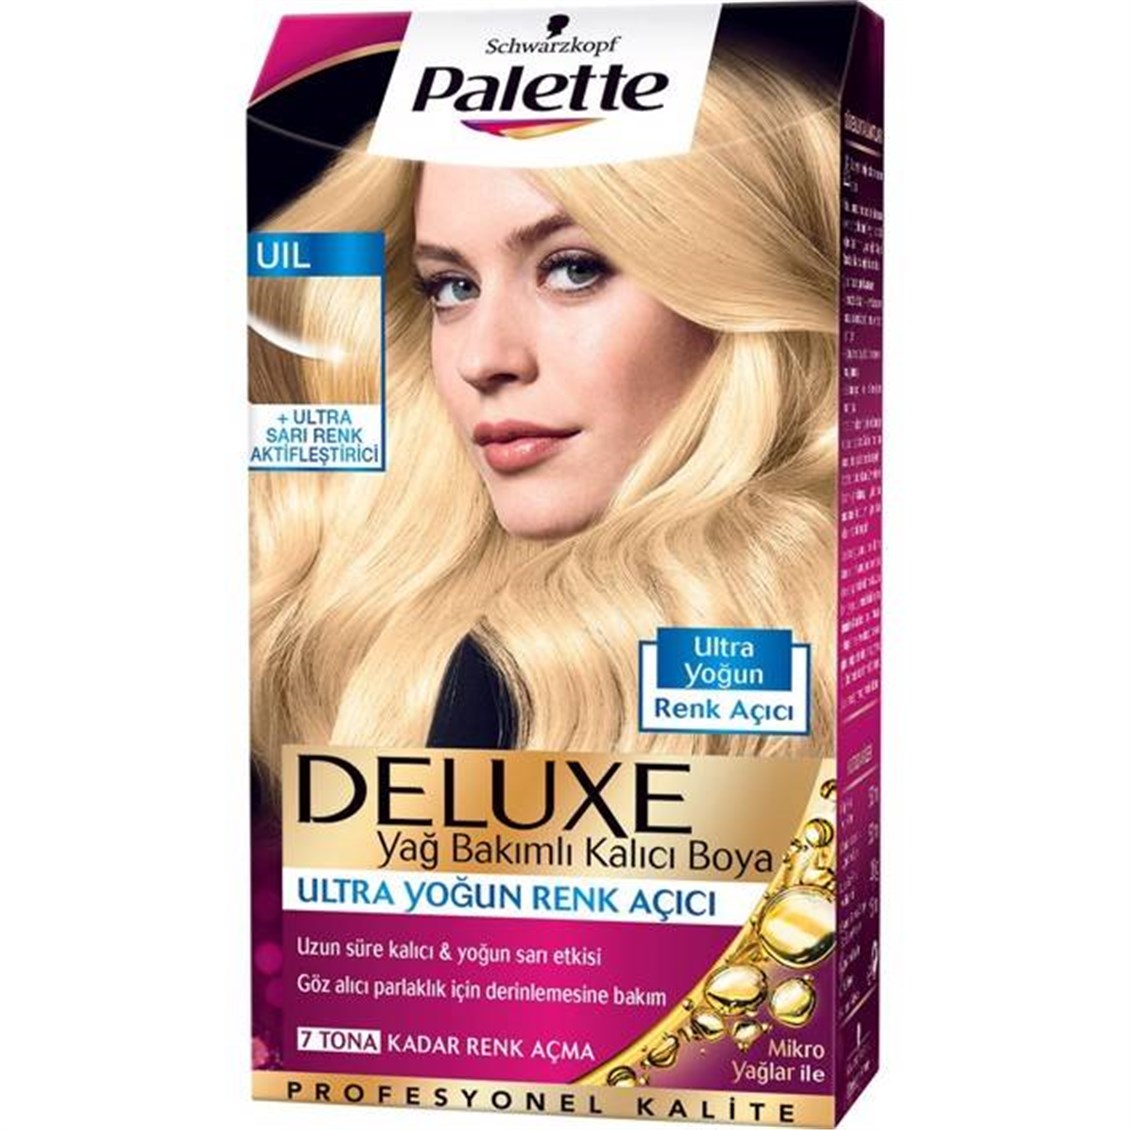 Palette Deluxe Blond Yoğun Renk Açıcı Saç Boyası - Onur Market